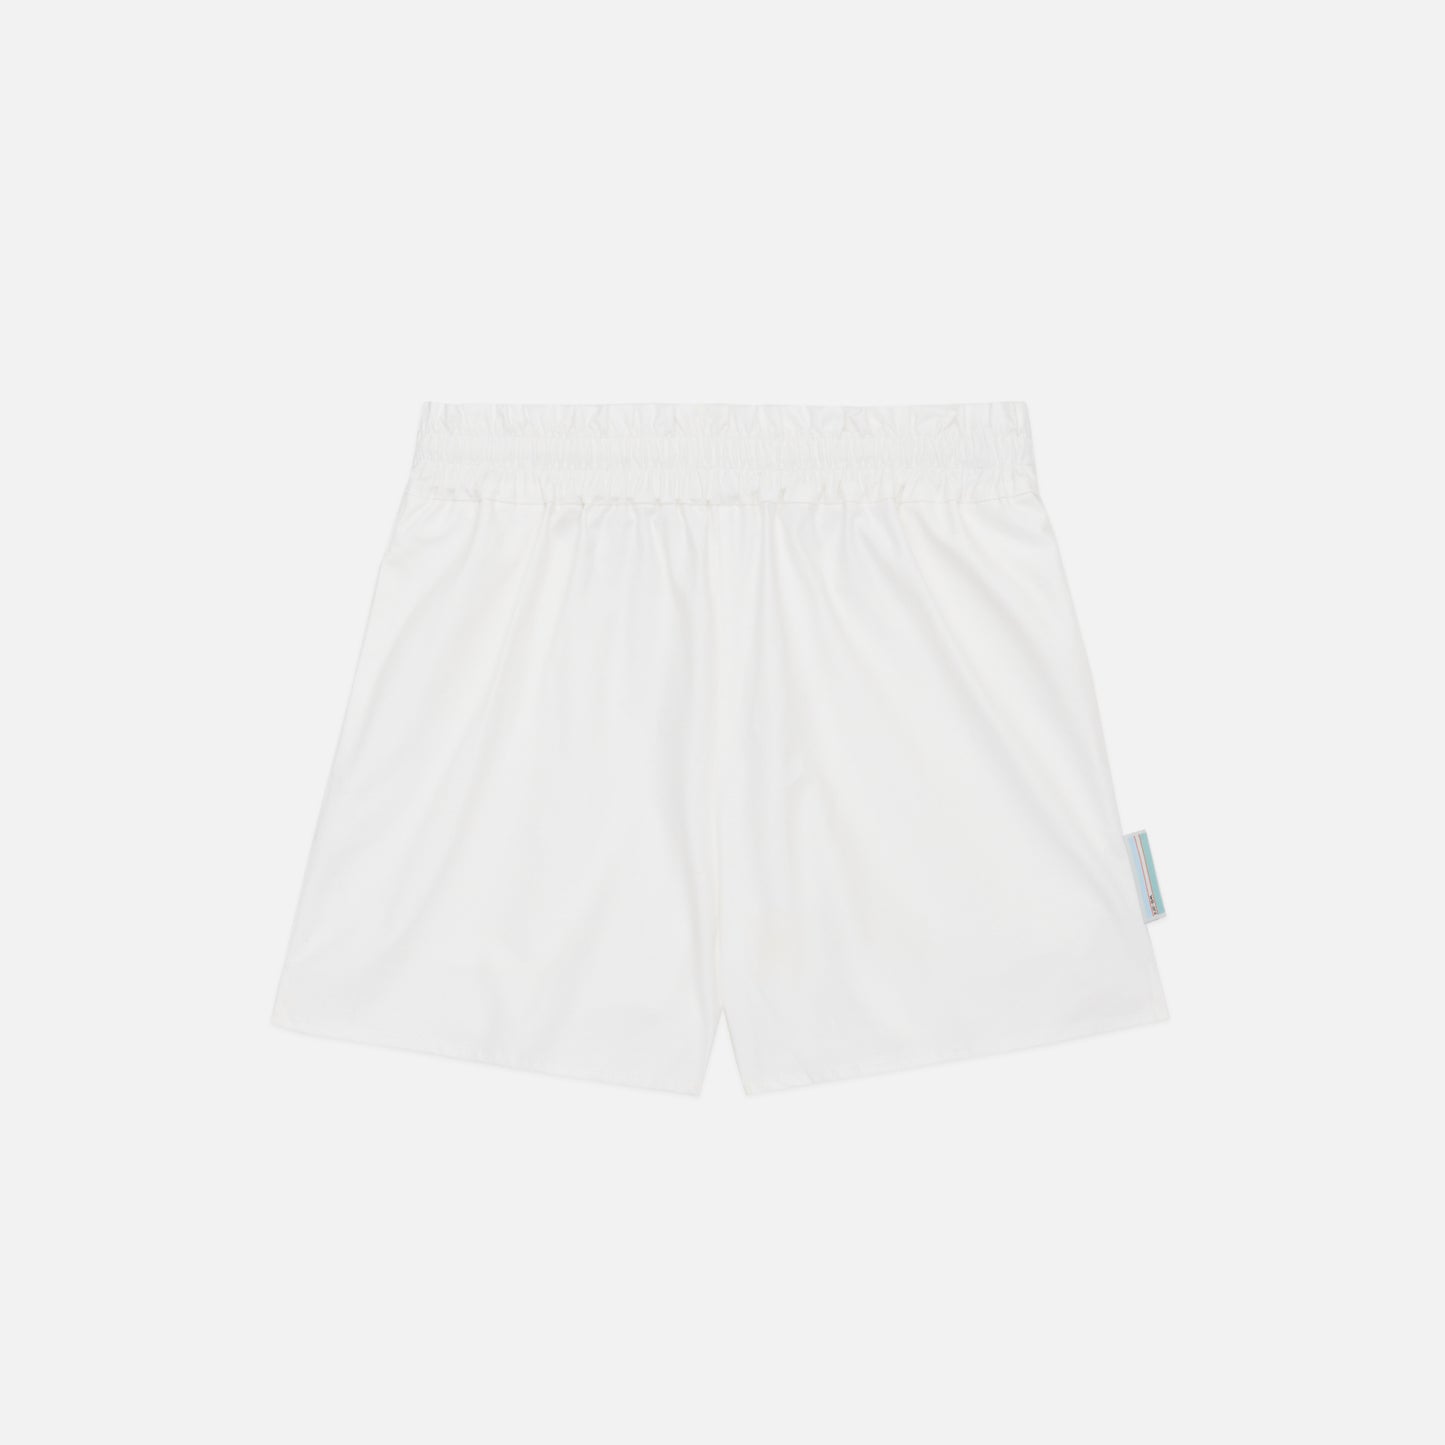 The Amalfi Shorts